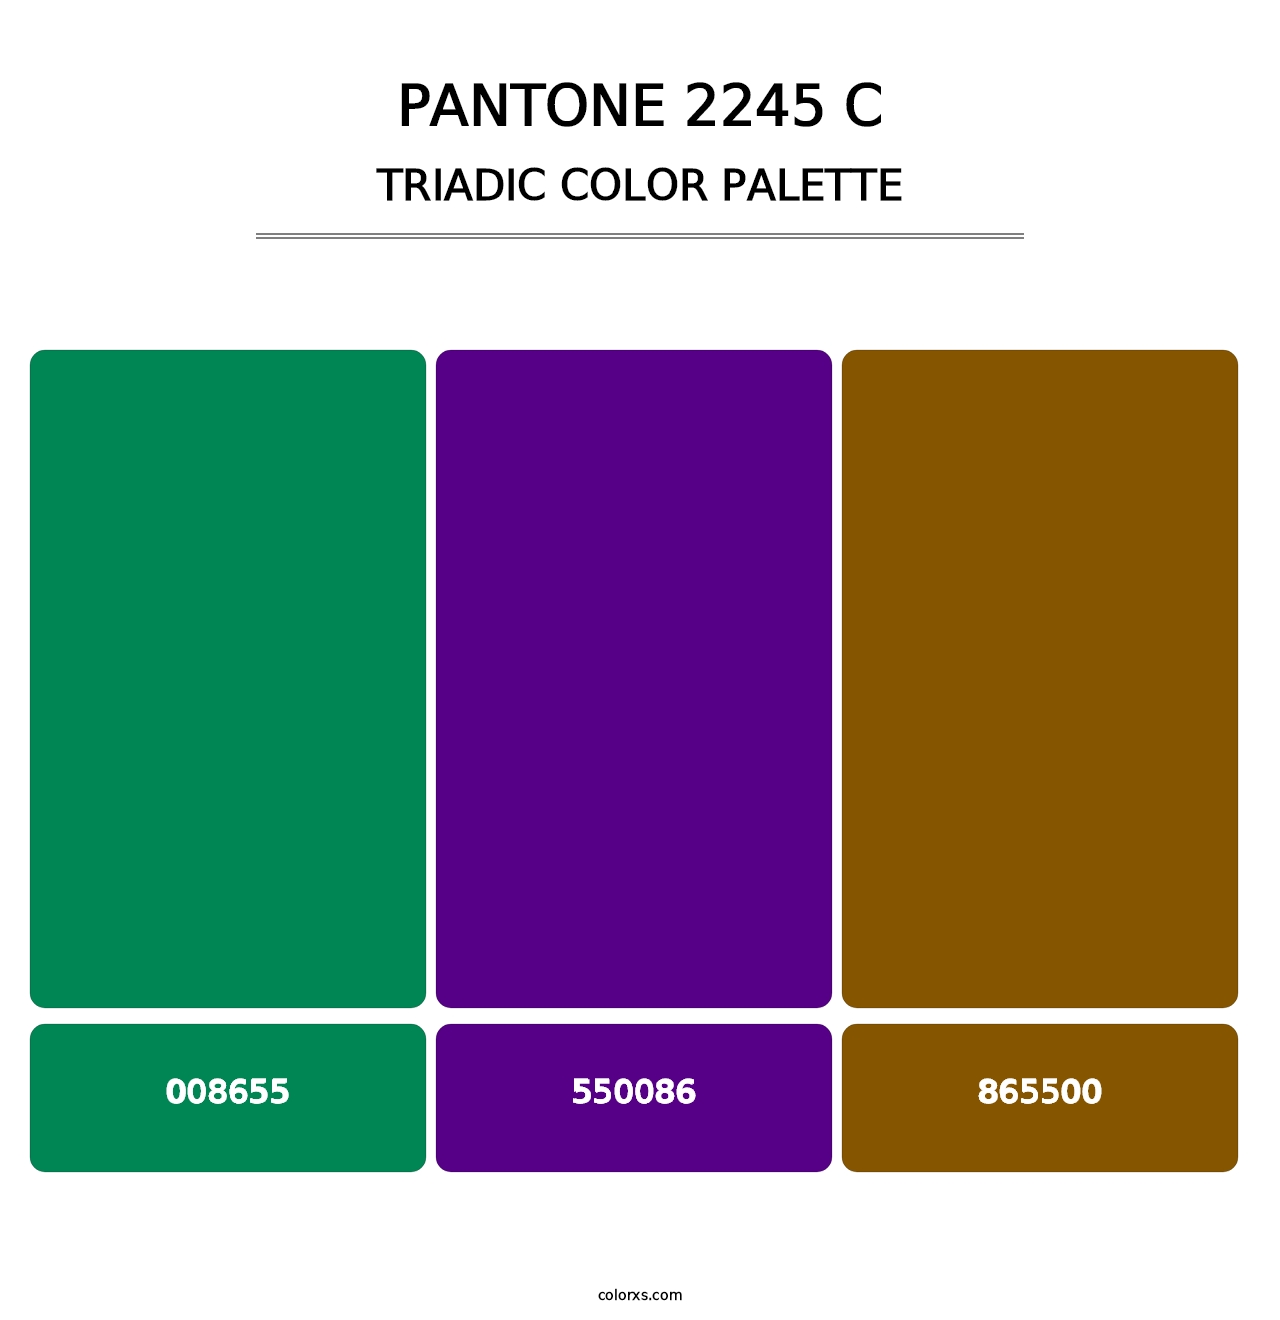 PANTONE 2245 C - Triadic Color Palette